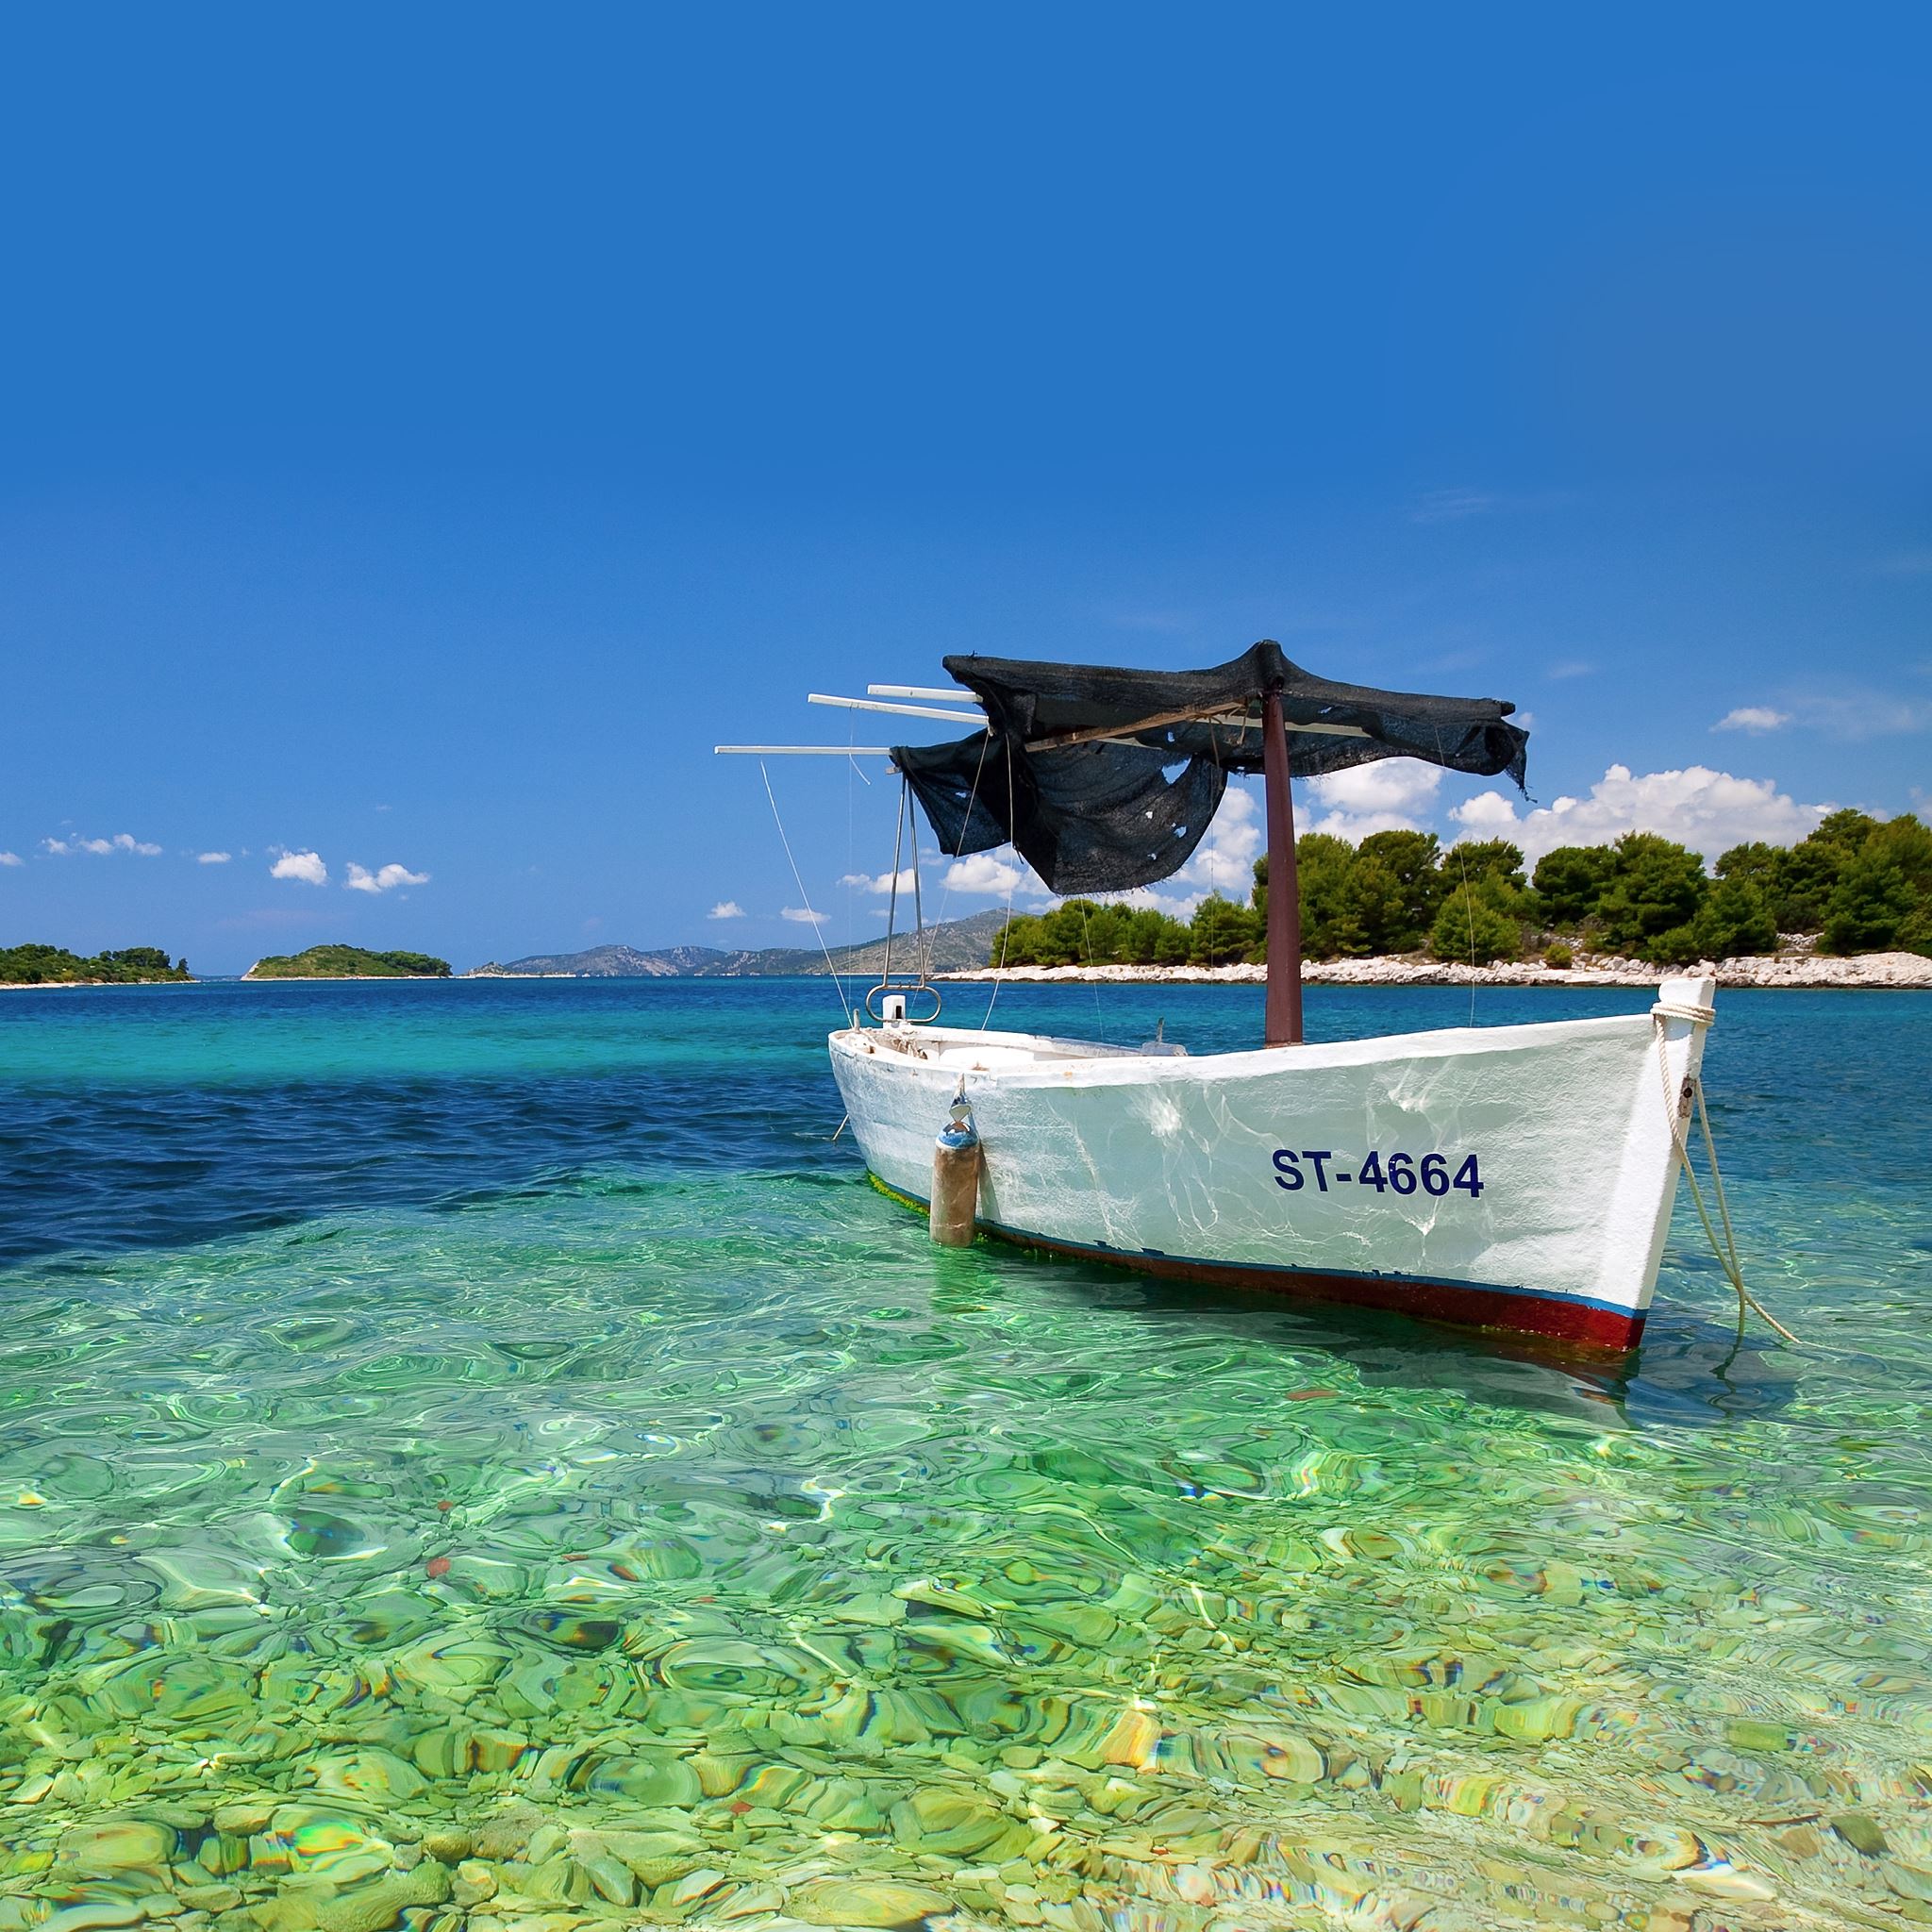 Croatian Boat iPad Air wallpaper 